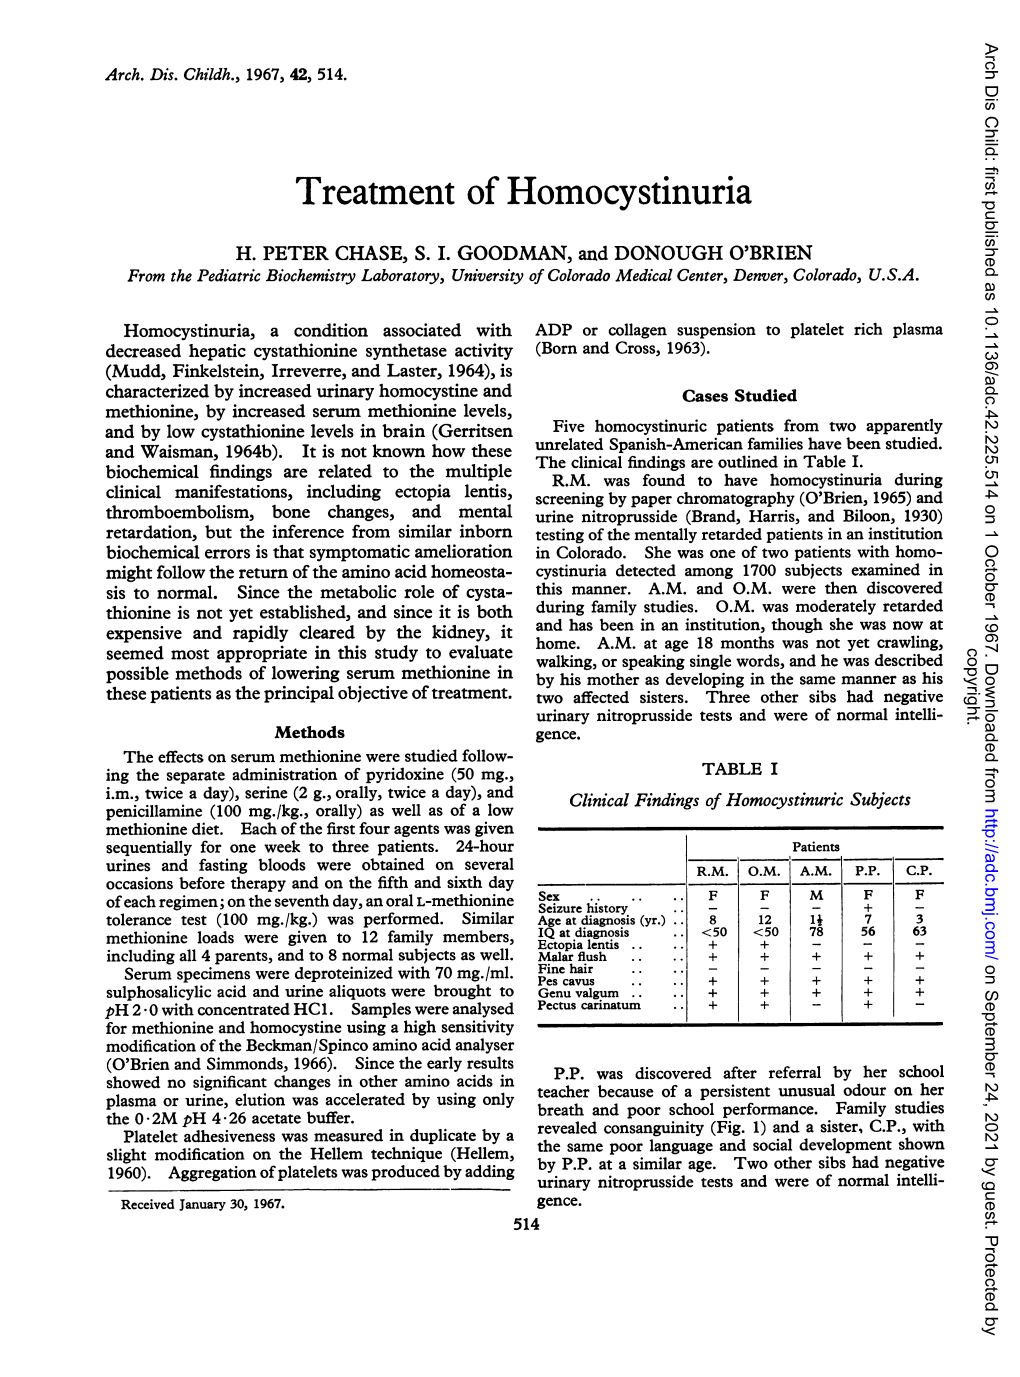 Treatment of Homocystinuria